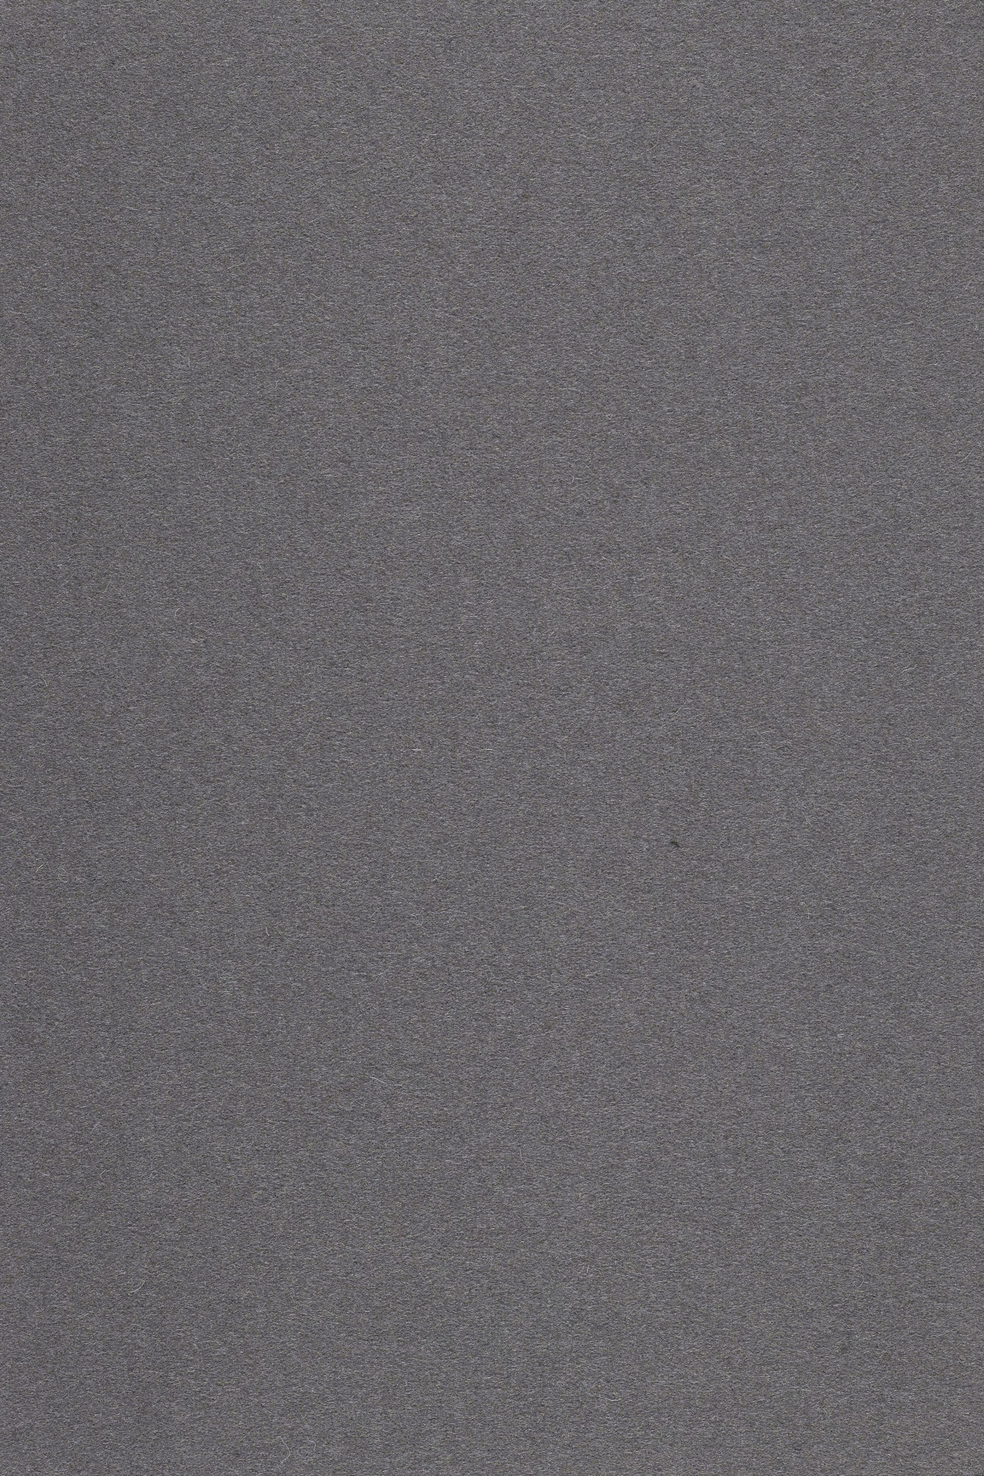 Fabric sample Divina 3 691 grey